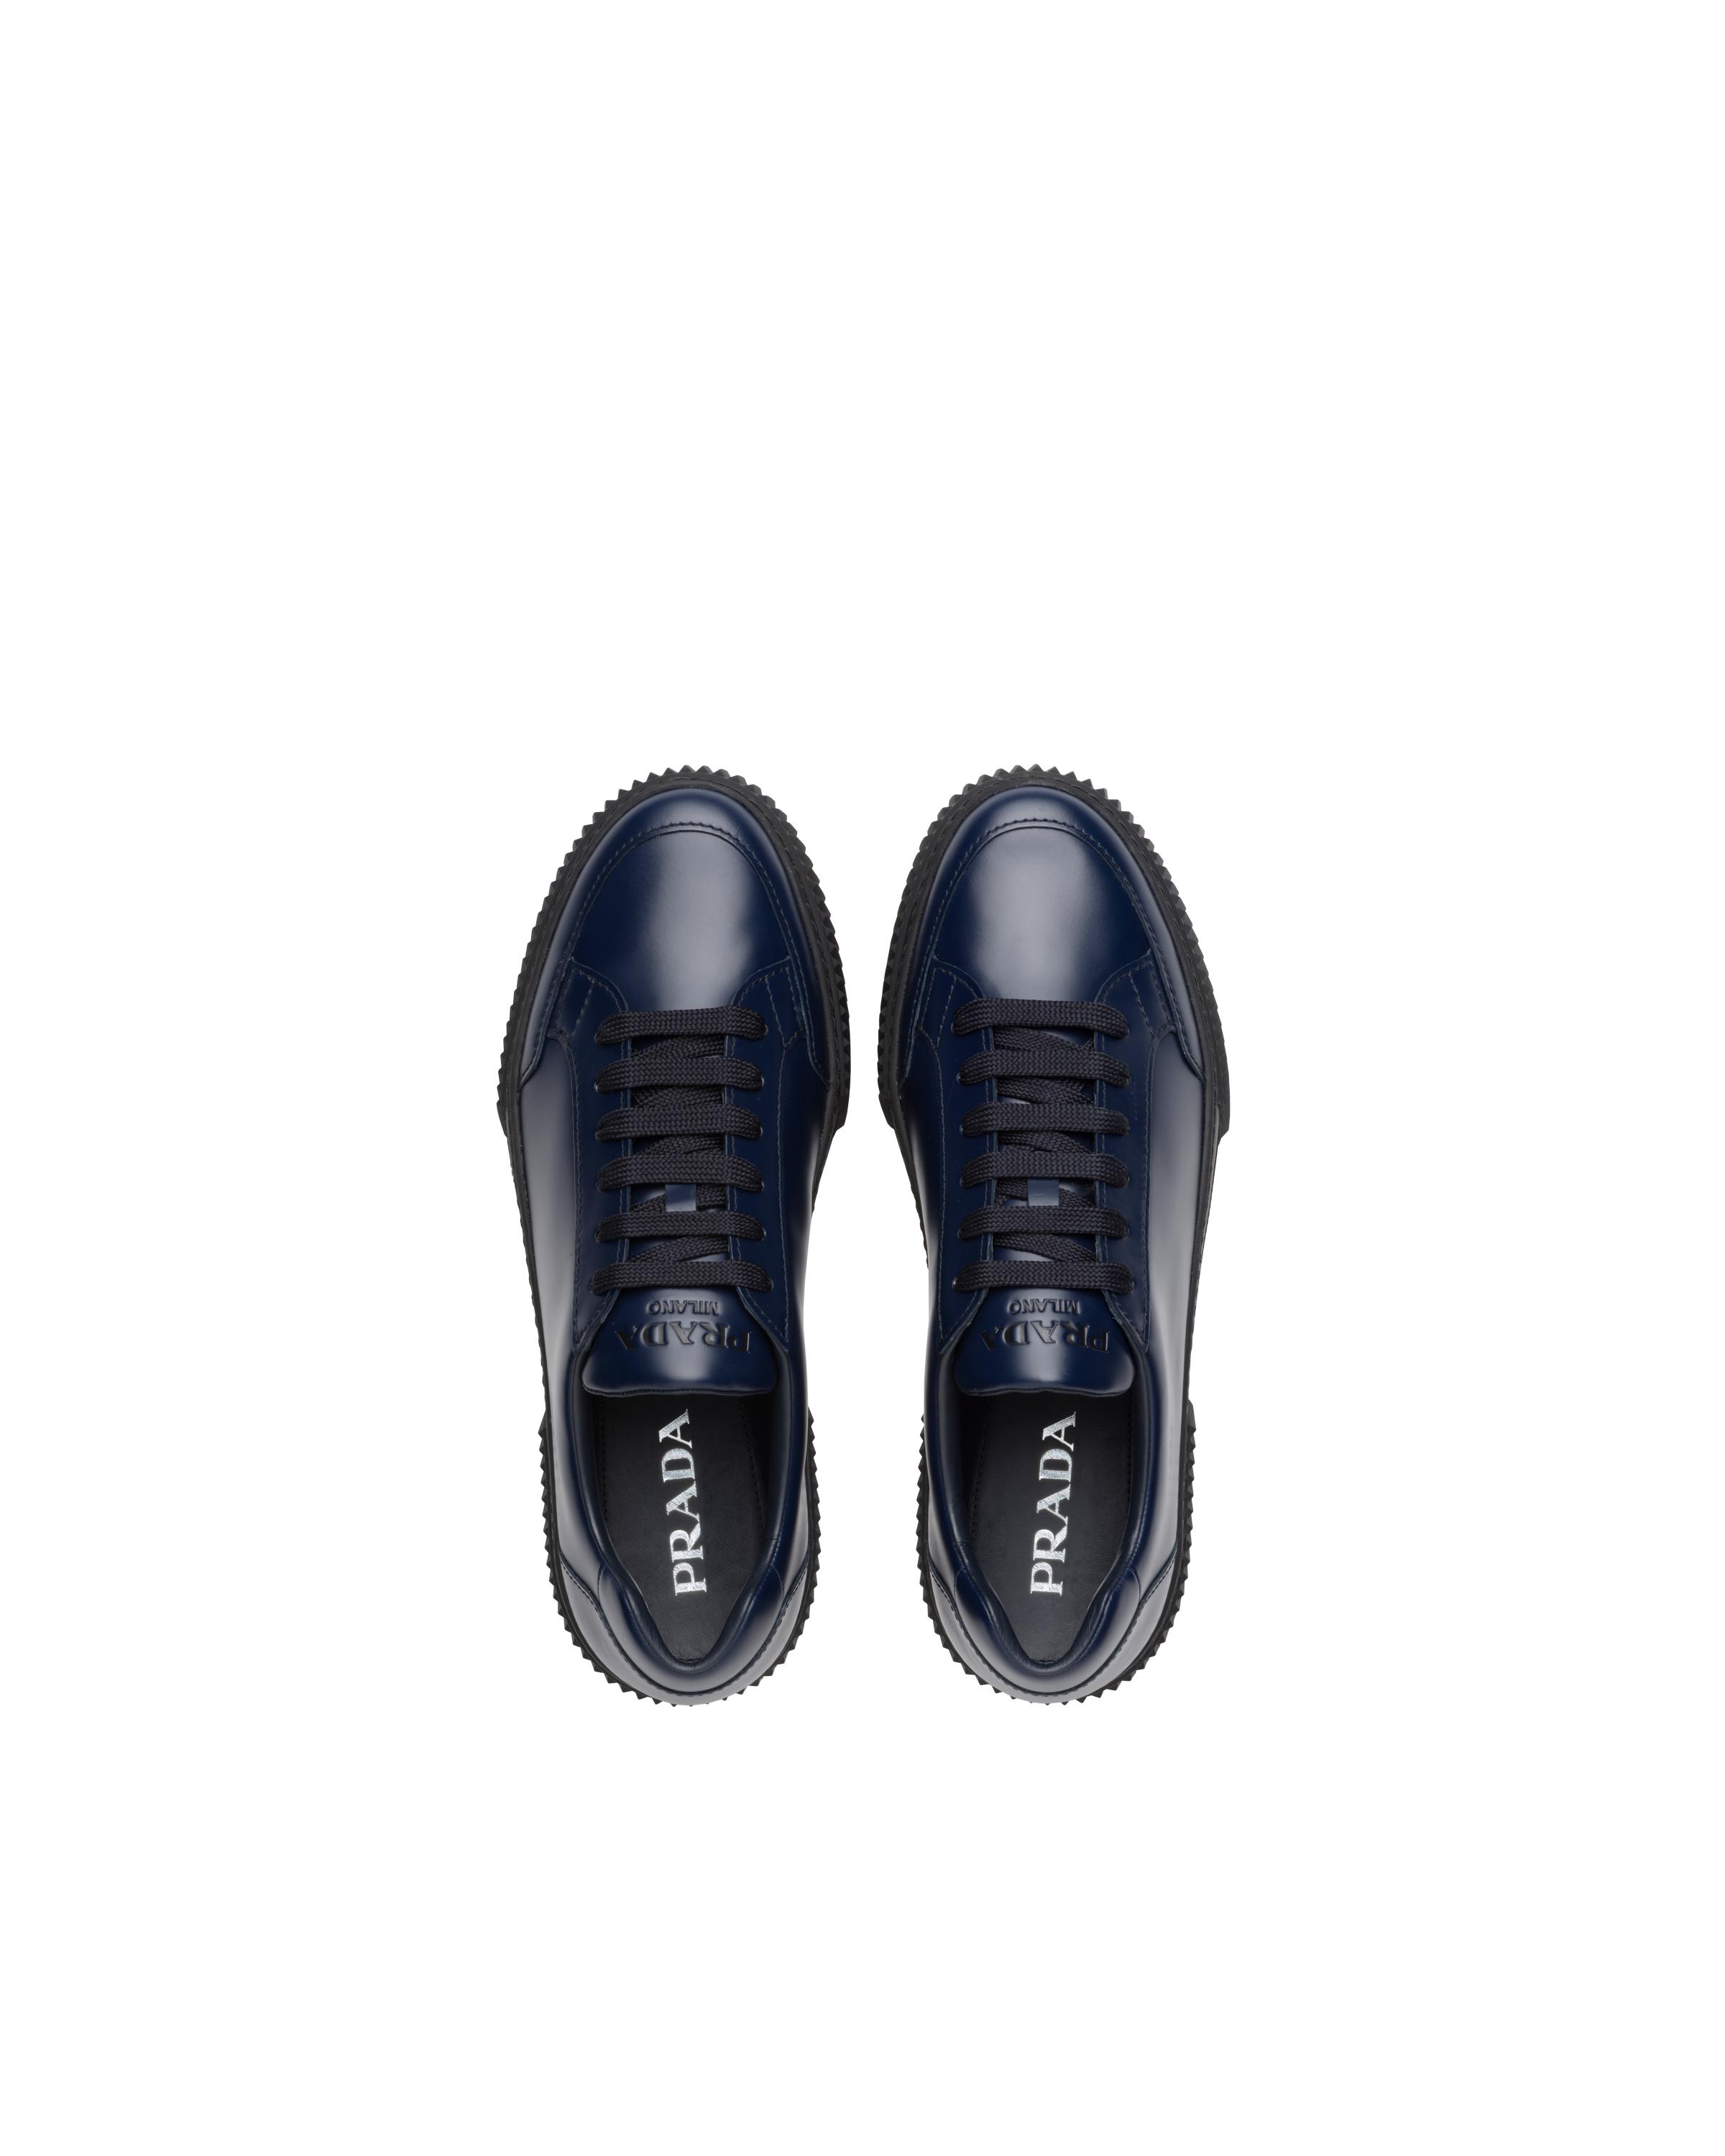 Prada Spazzolato Rois Leather Sneakers in Black for Men | Lyst